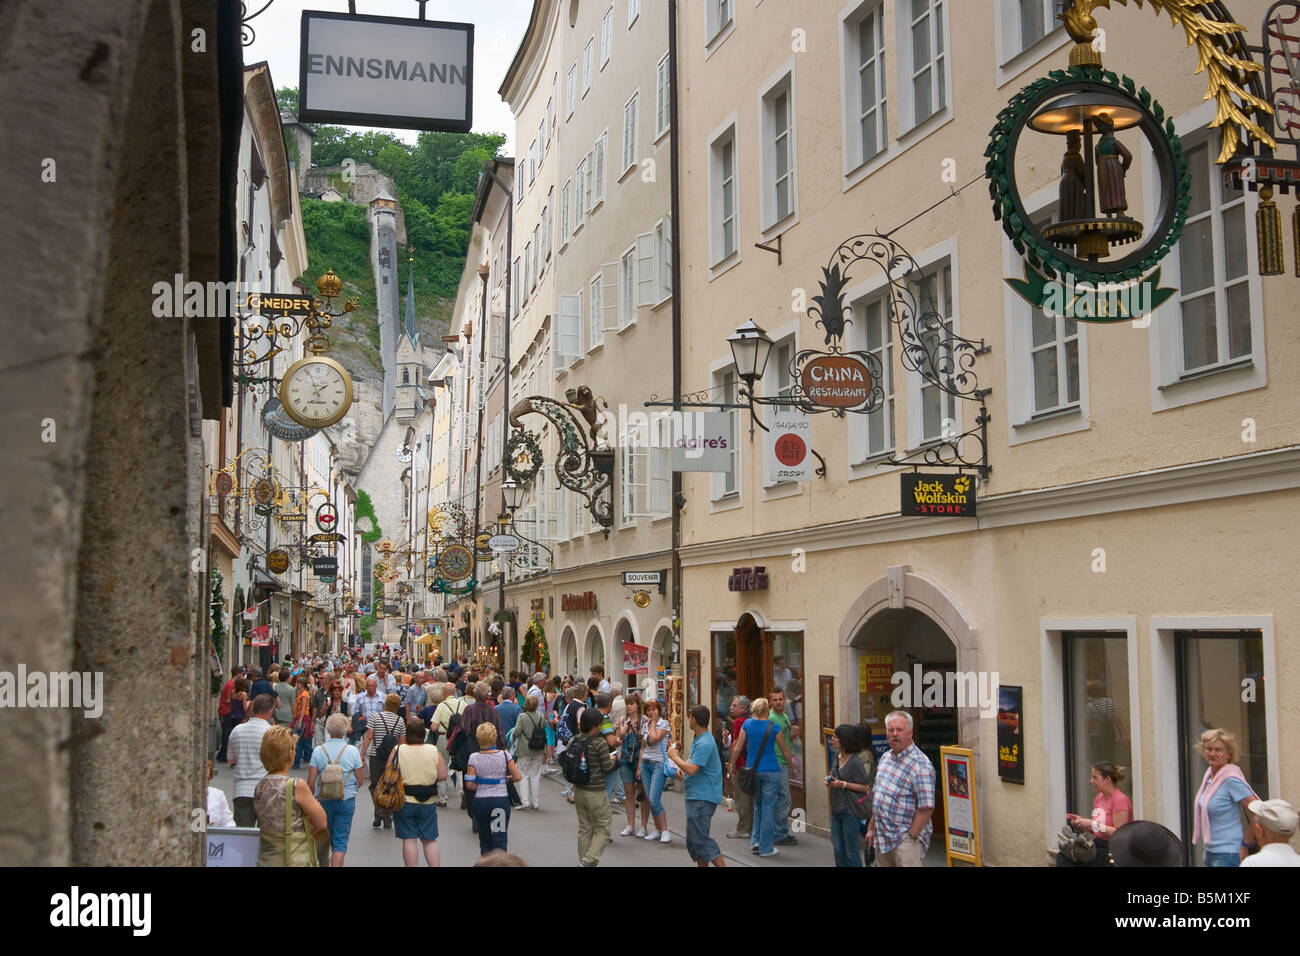 Mass tourism in Getreidegasse street Salzburg Austria Europe Stock Photo